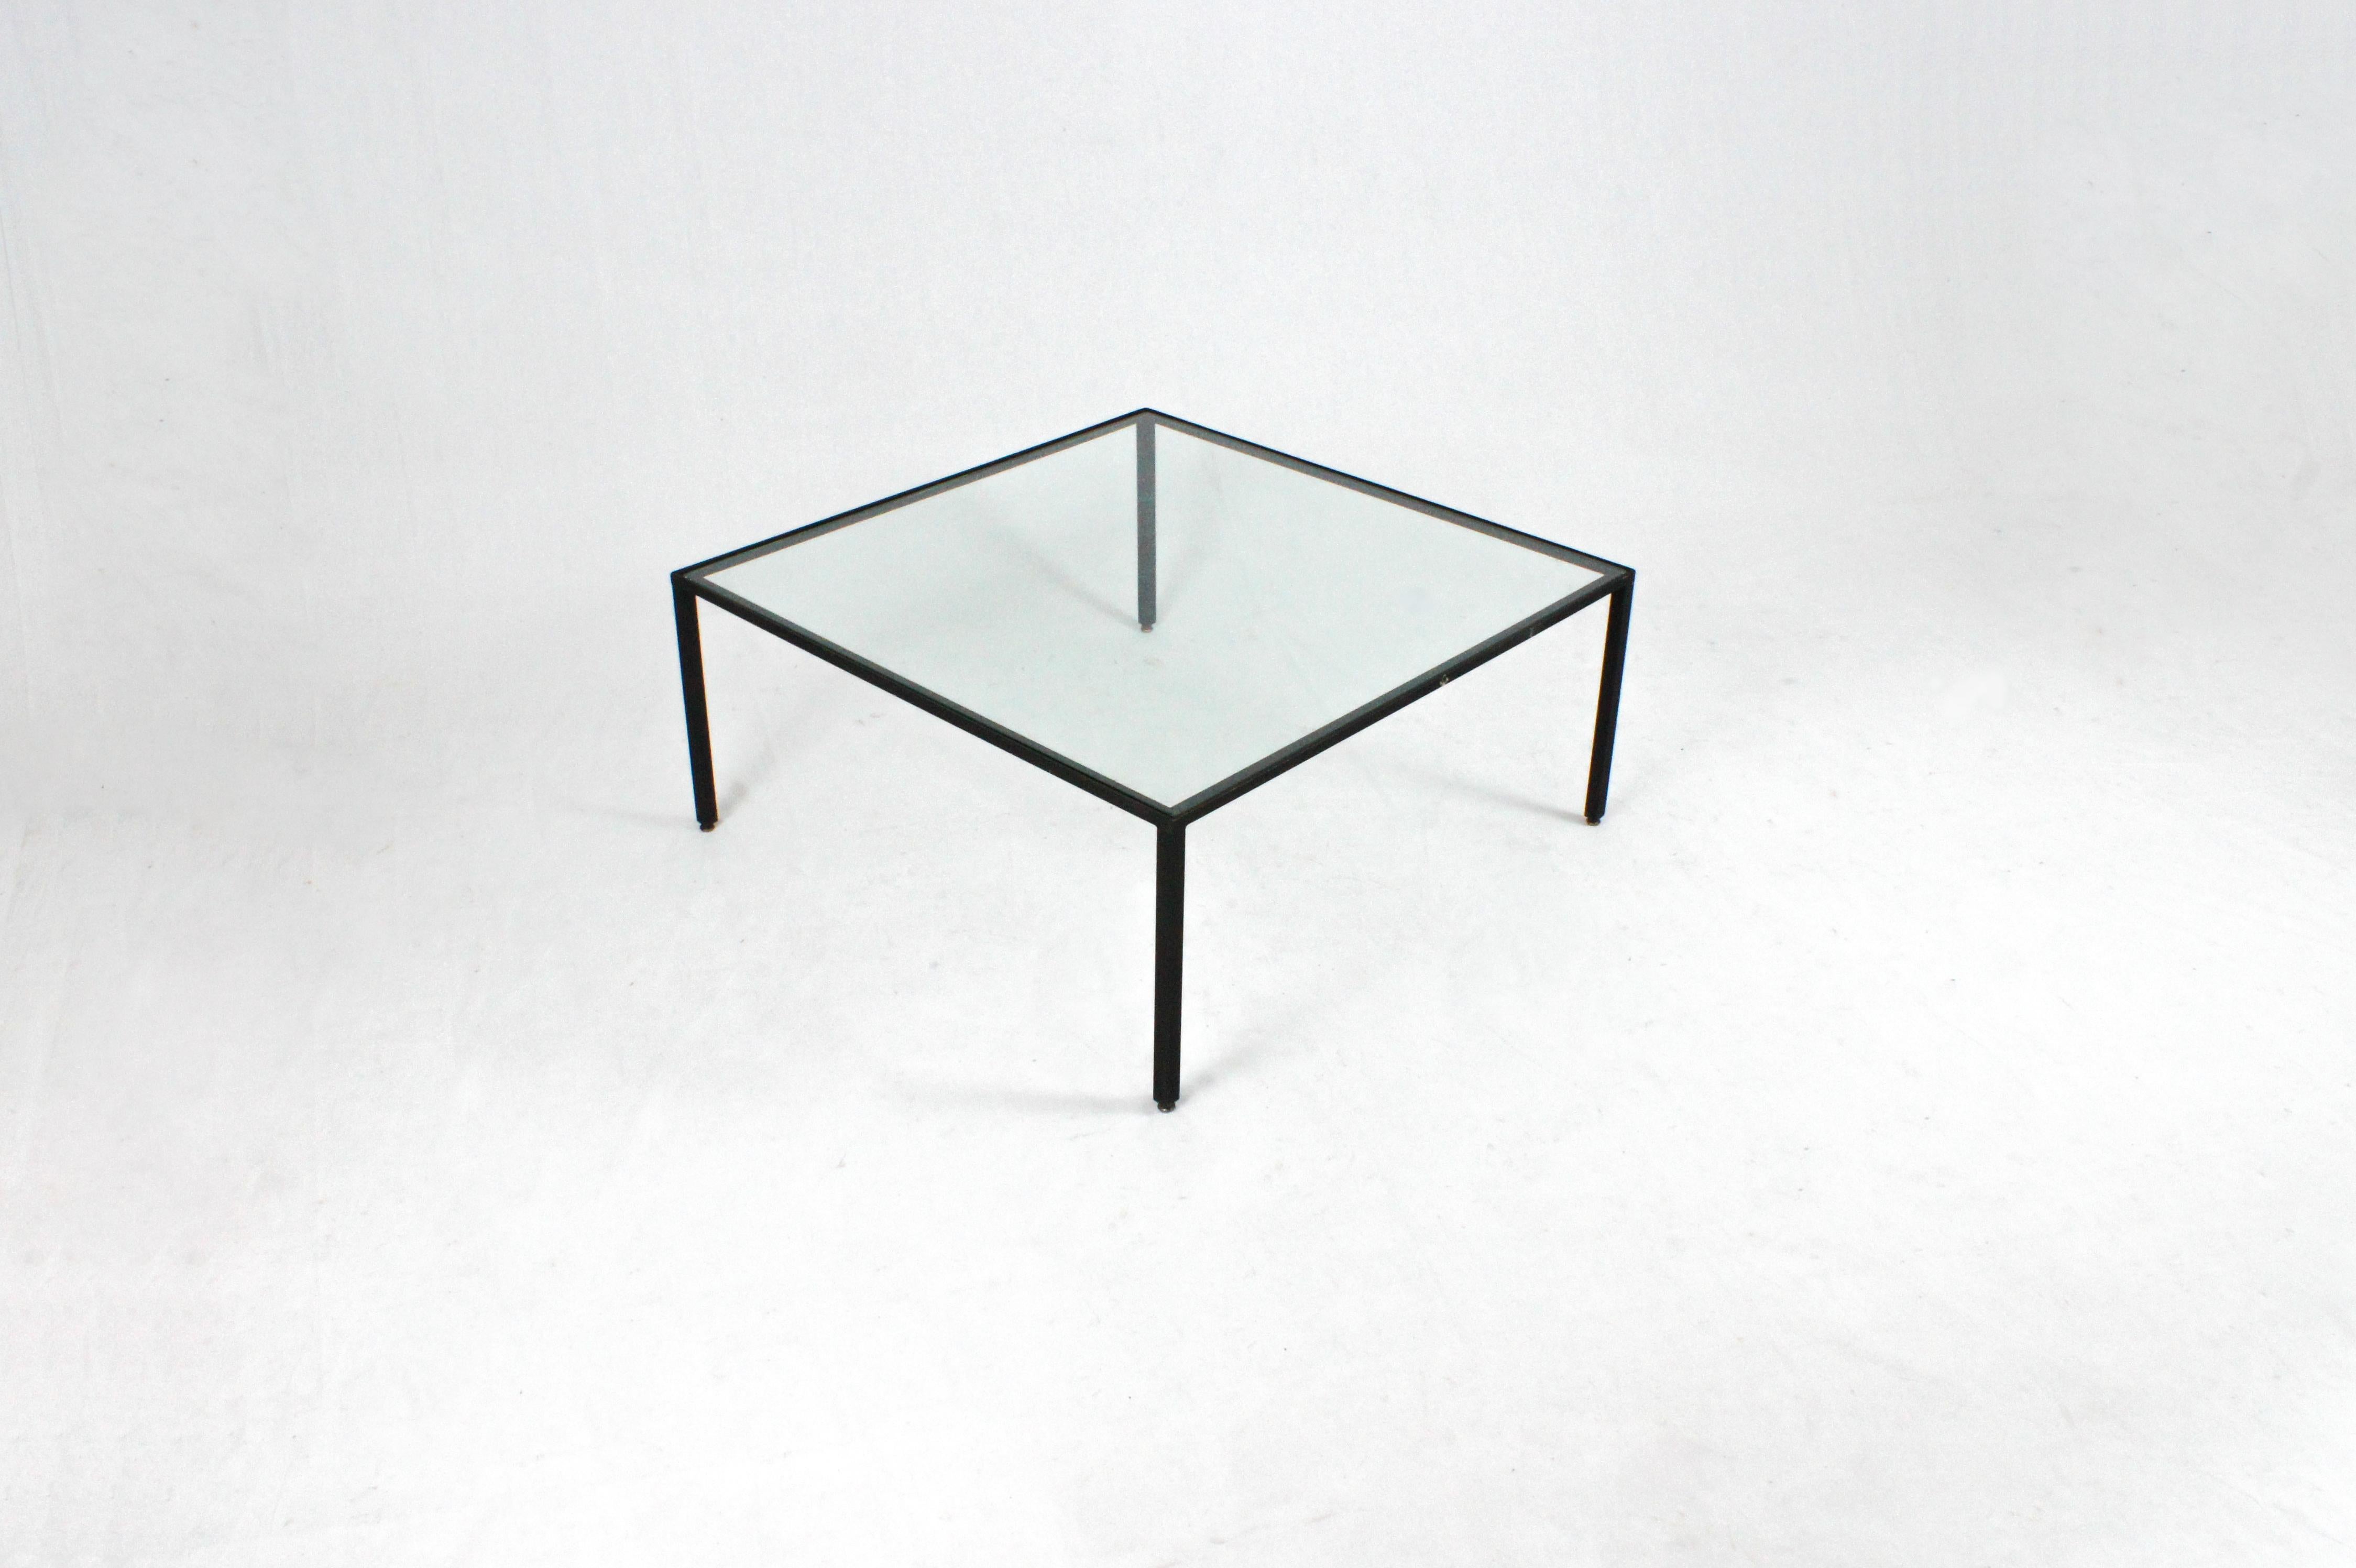 Tavolino da centro degli anni 60 disegnato da Franco Campo e Carlo Graffi e prodotto dalla loro azienda 'Home torino'.

Il telaio è in metallo con effetto martellato, il cristallo è l'originale (marchiato SIVET), i piedi sono regolabili.

Presenta